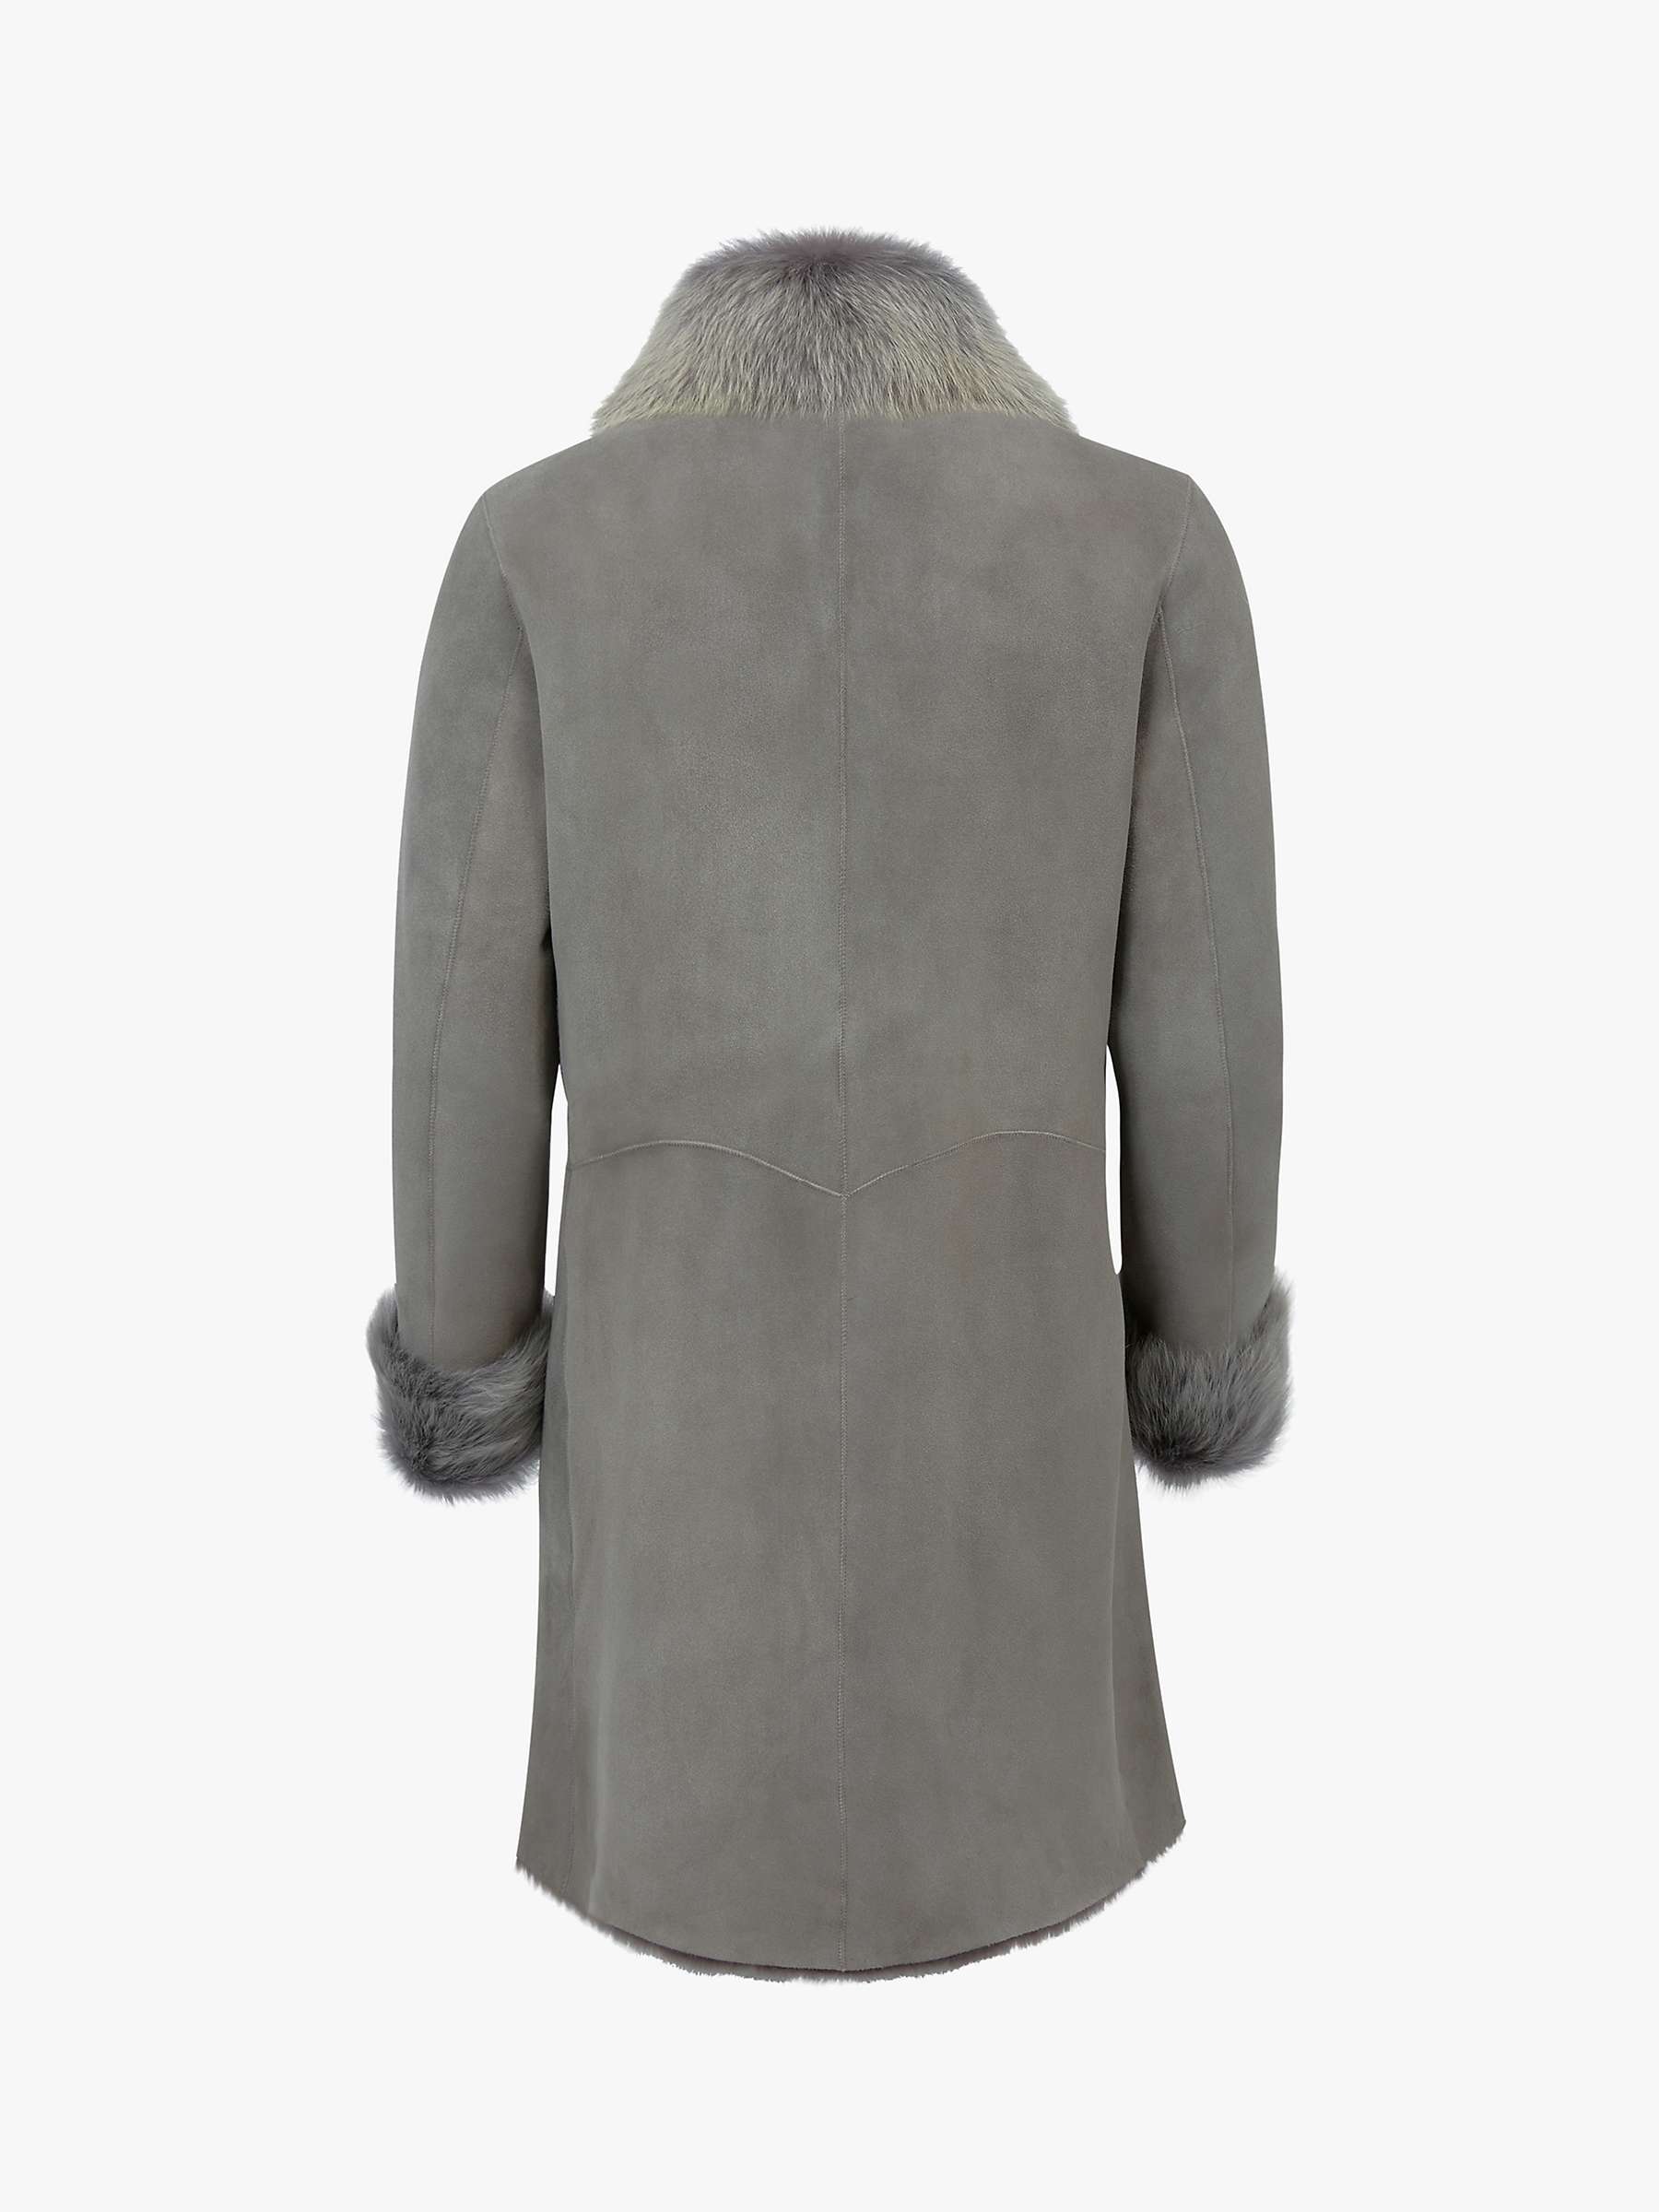 Buy Celtic & Co. Toscana Trim Coat, Grey Online at johnlewis.com